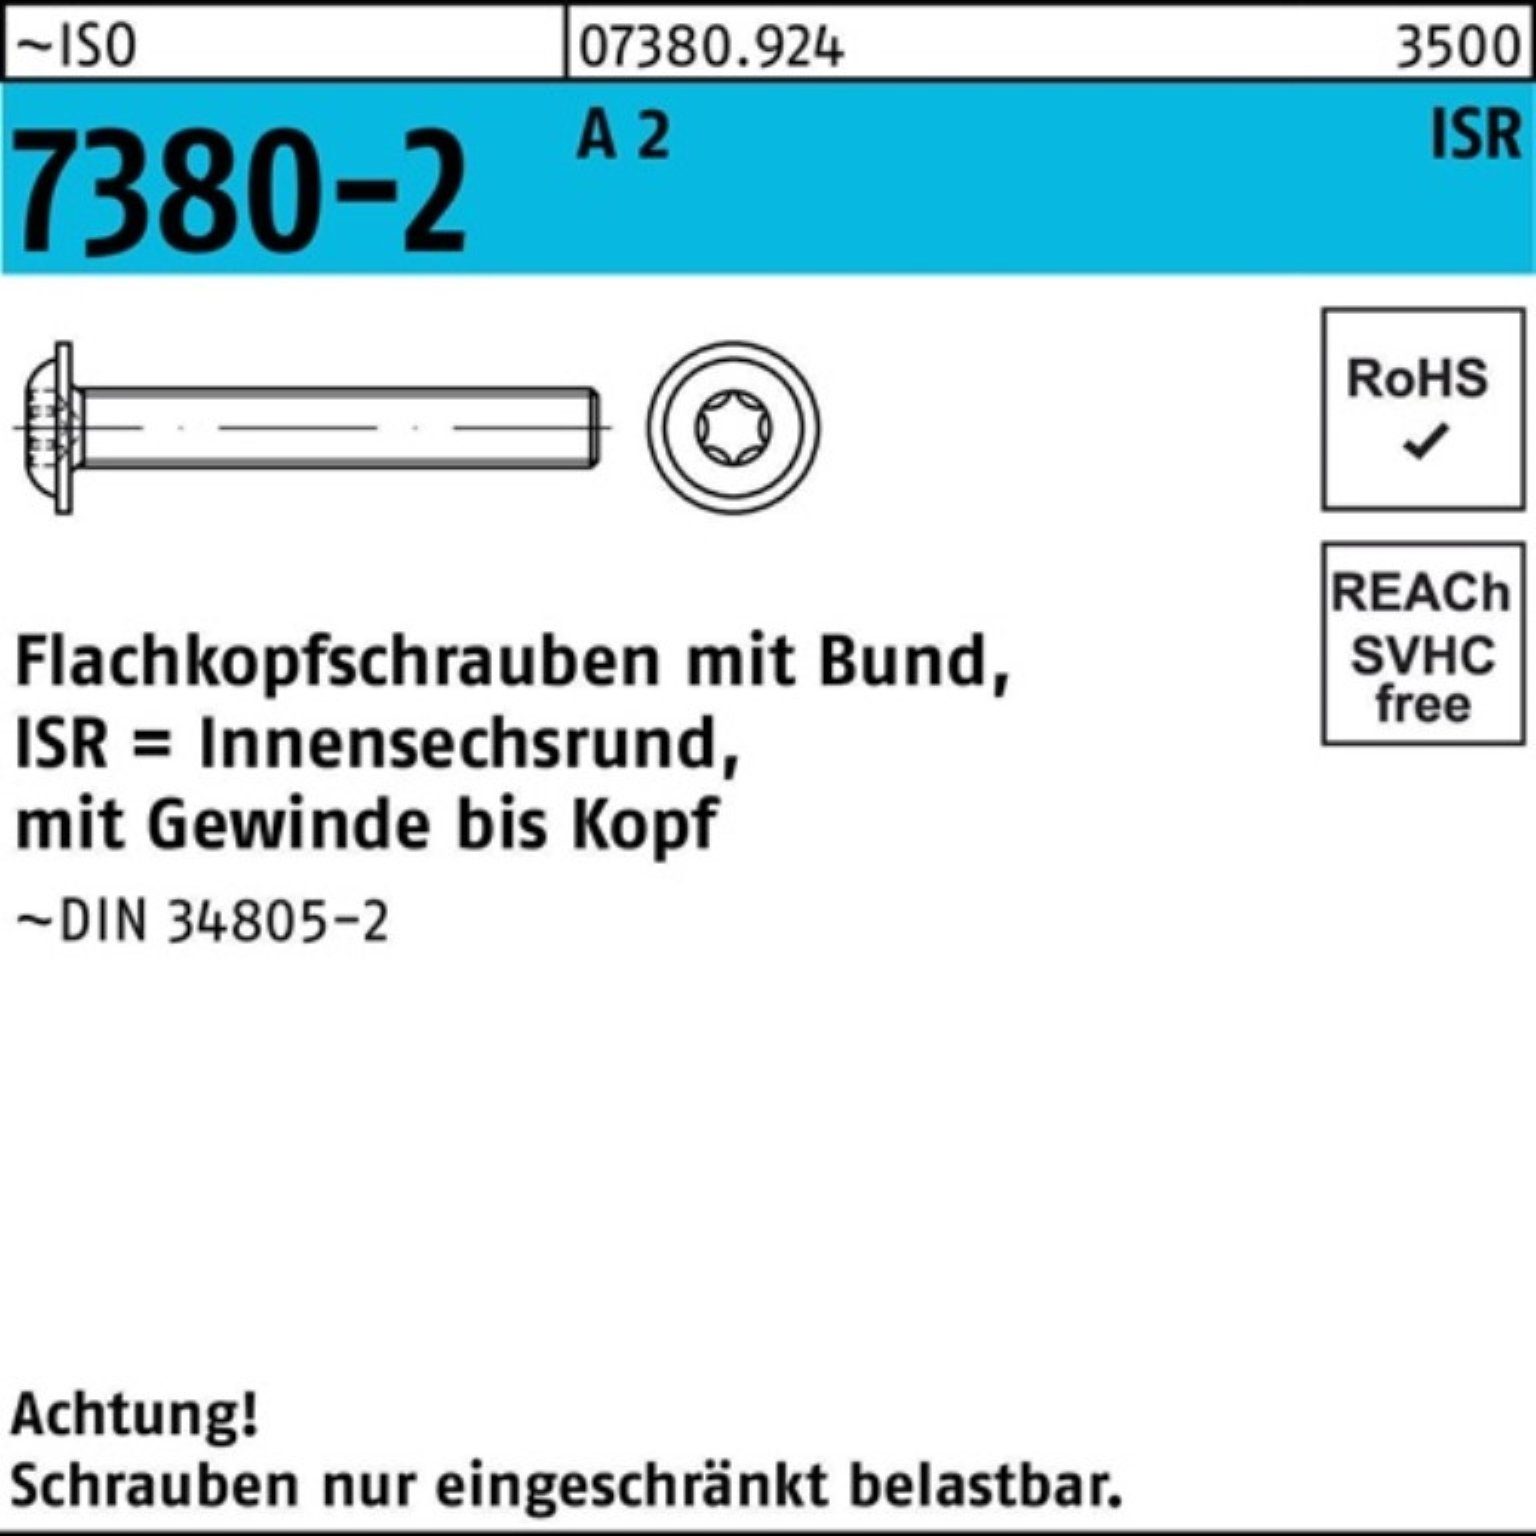 Reyher Schraube 500er Pack 40-T10 M3x Flachkopfschraube VG 7380-2 2 500 Bund/ISR ISO A